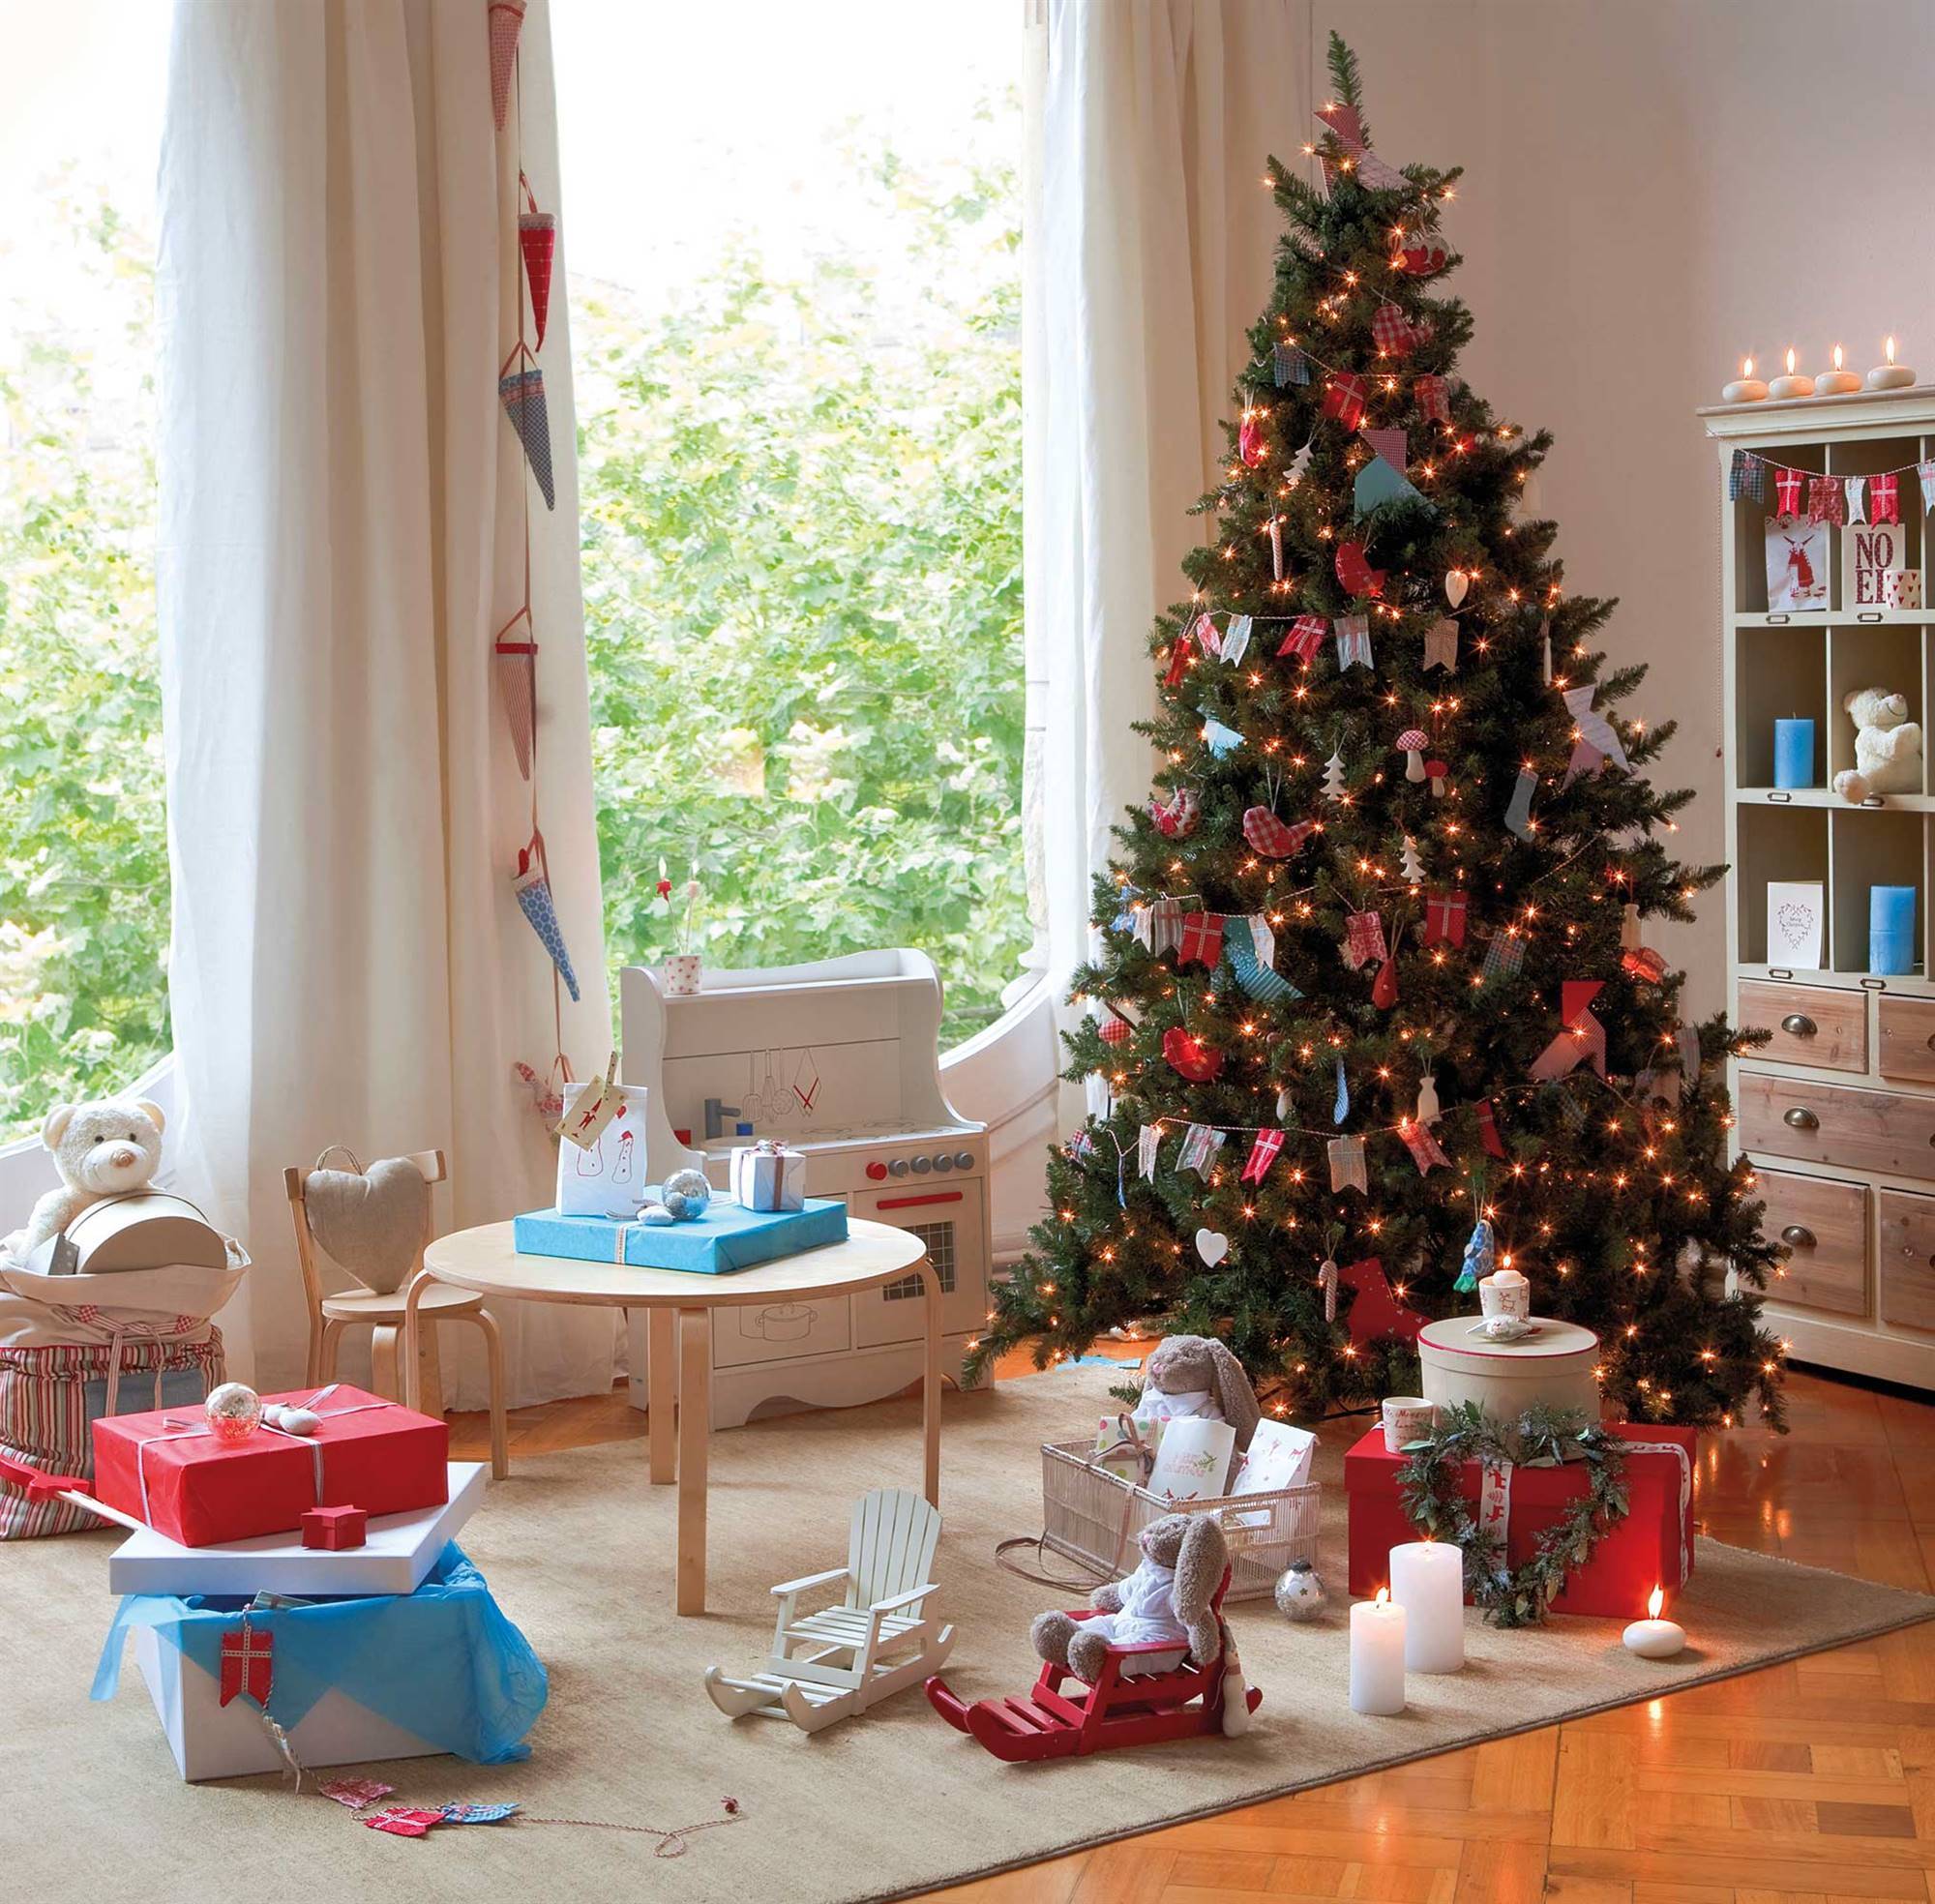 Zona de juegos infantil con árbol de Navidad decorado con banderas.